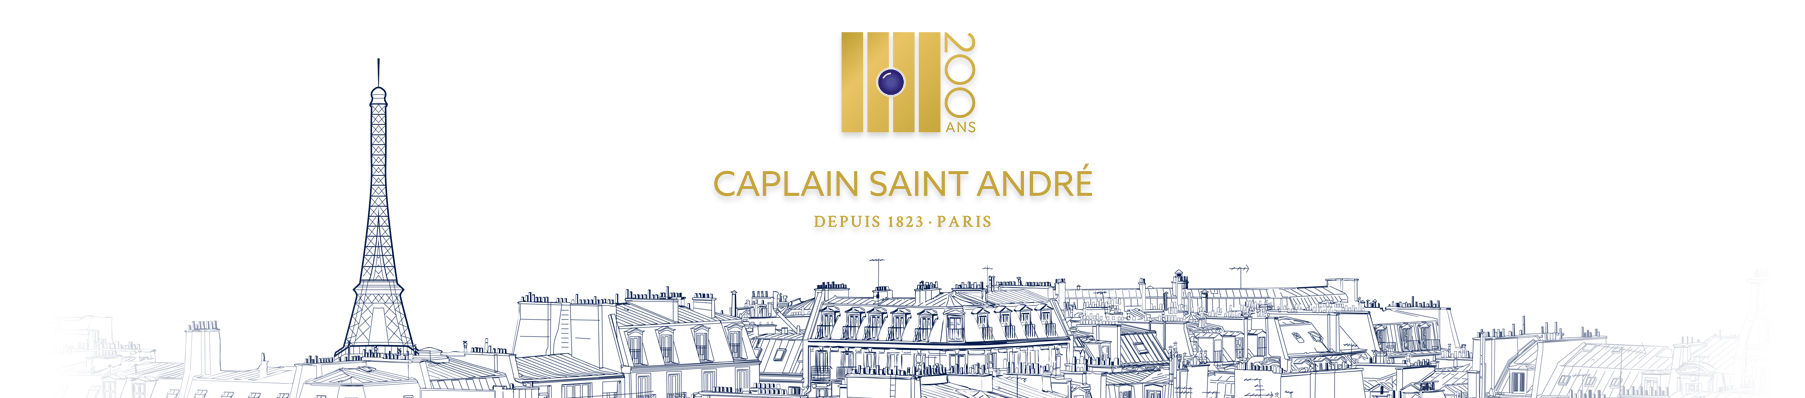 200 ans Caplain Saint André